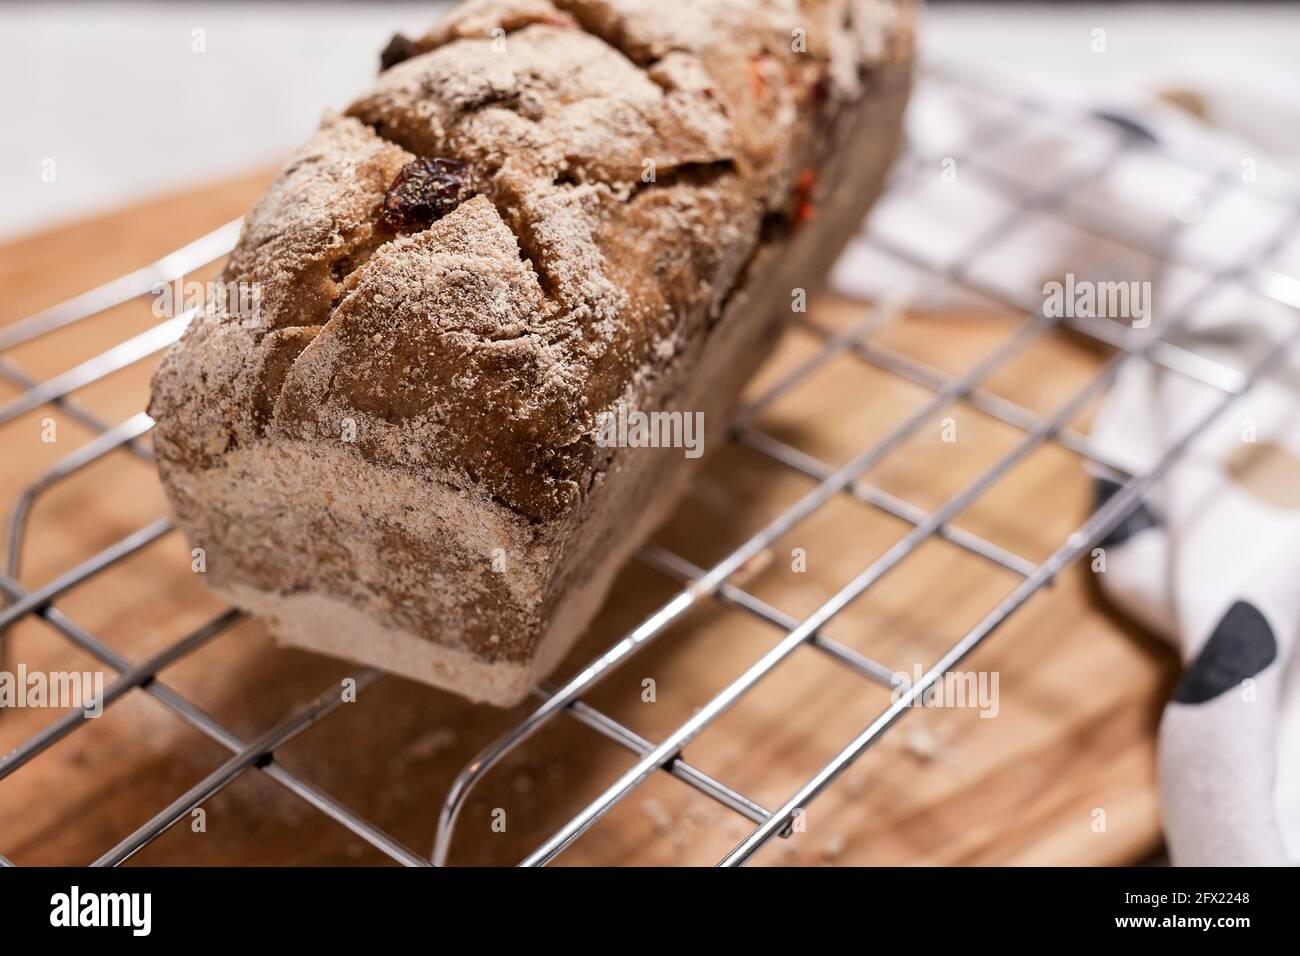 Sourdough homemade fruit bread on baking grid. Stock Photo